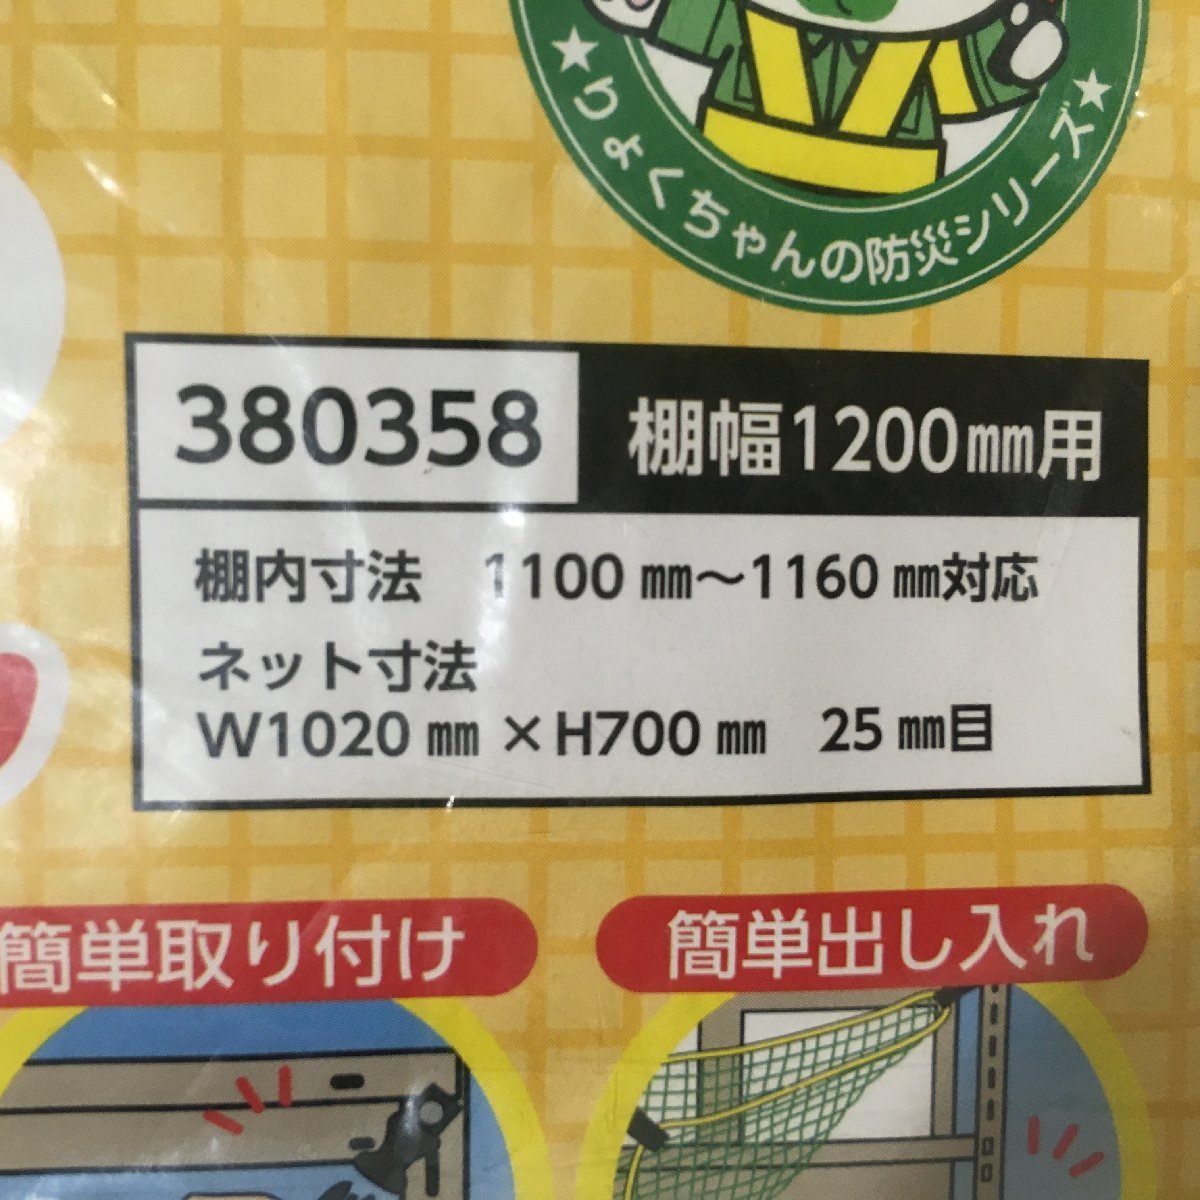 【未使用品】日本緑十字社 防災ネット 落ちないくんⅡ ・W1620mm×H700mm・W1020mm×H700mm(接着金具、取り付けボルト欠品)　ITC78H1IOPE6_画像4